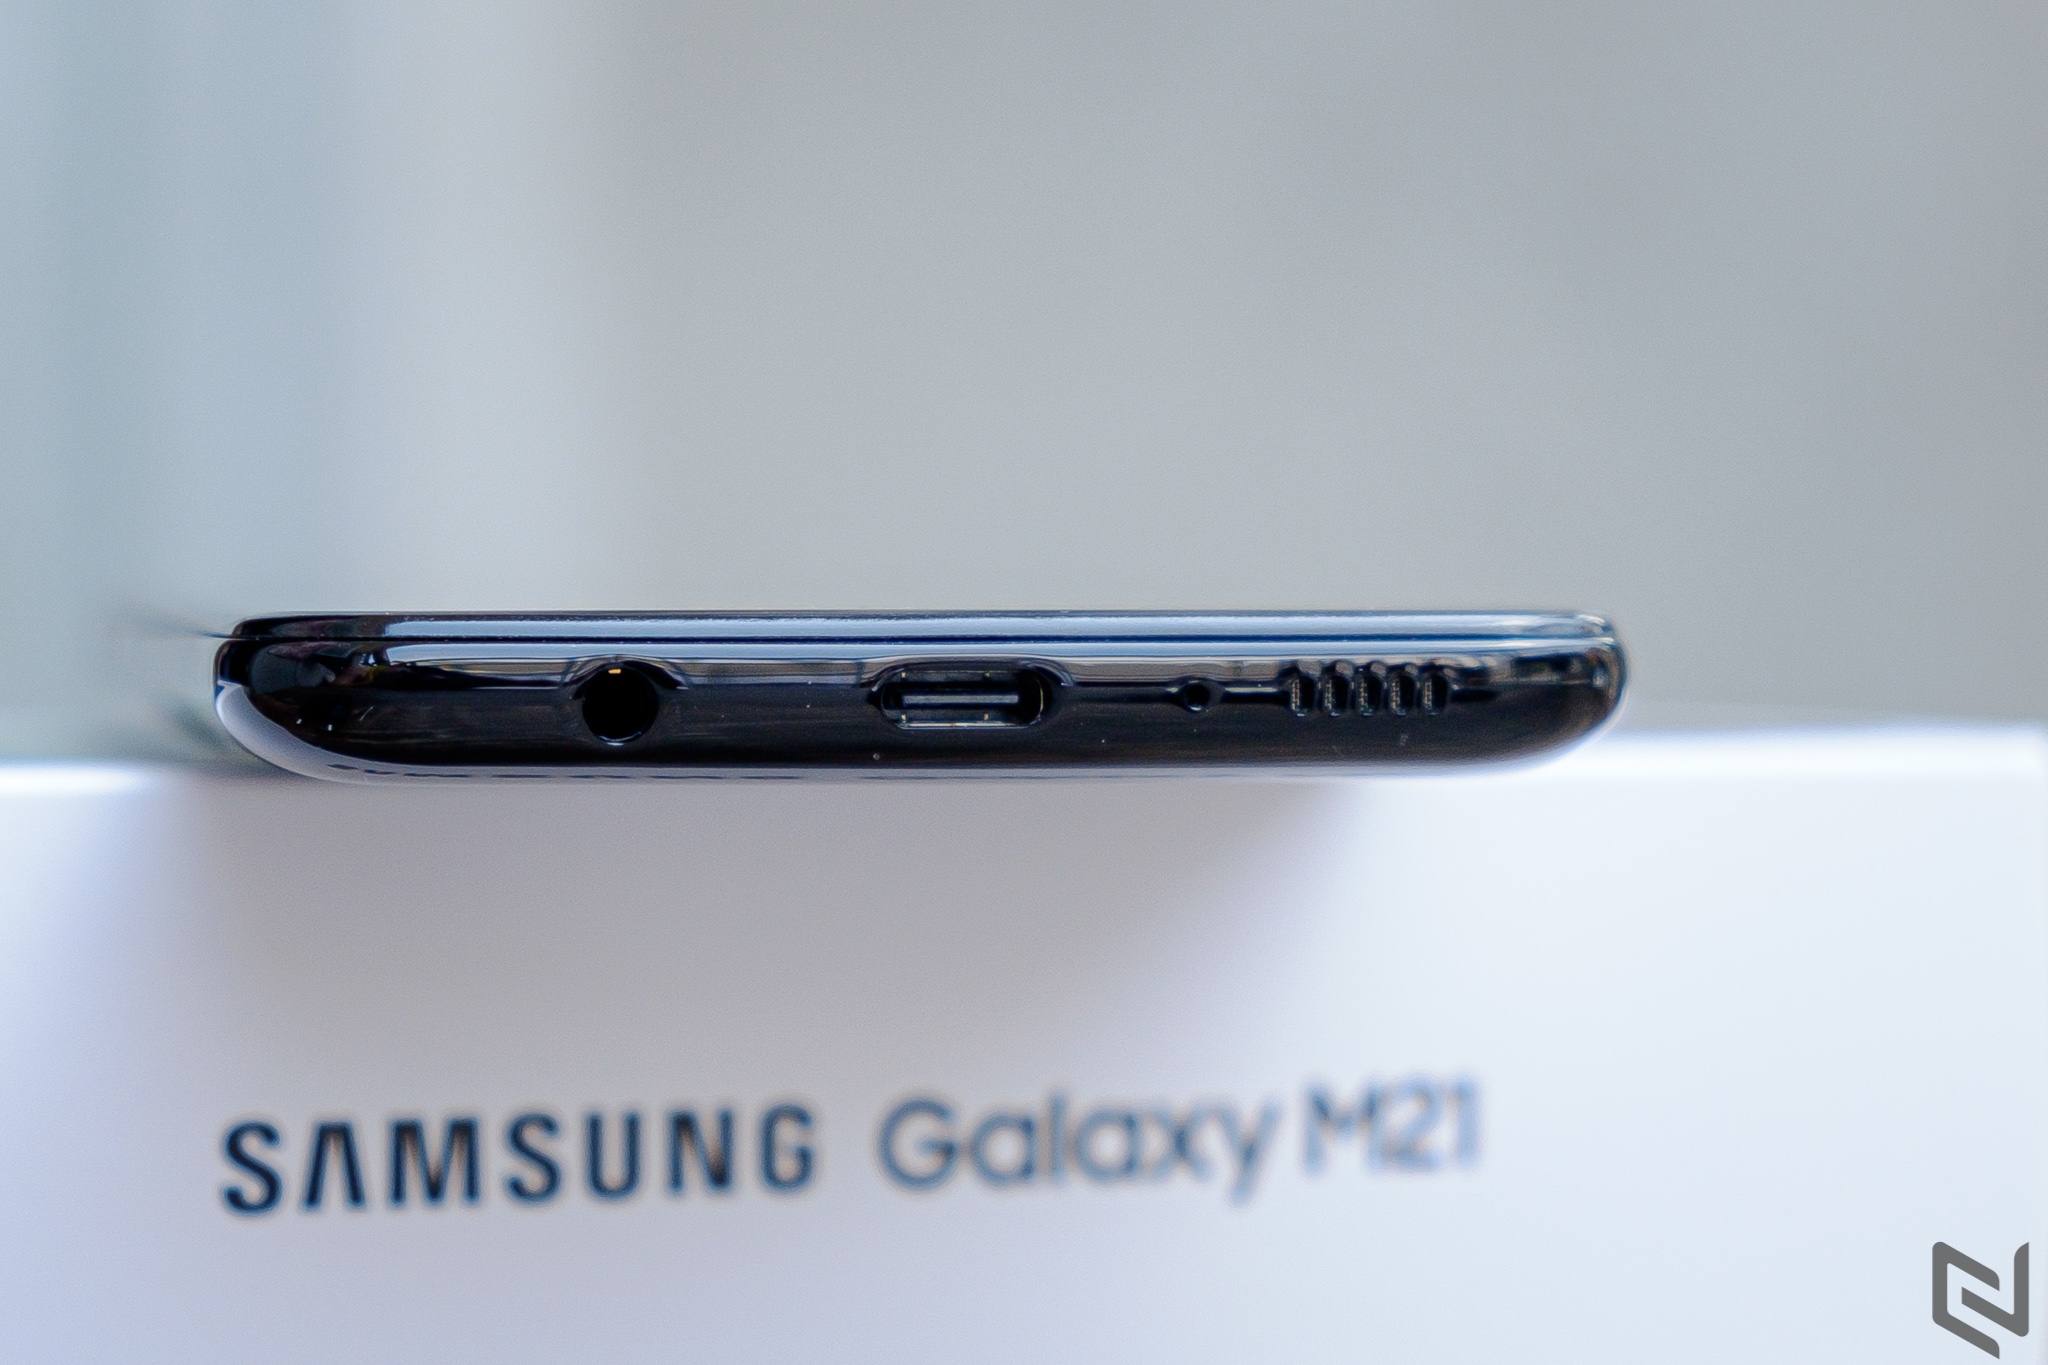 Đánh giá Galaxy M21: Hiệu năng mạnh, dùng cả ngày dài với viên pin khủng